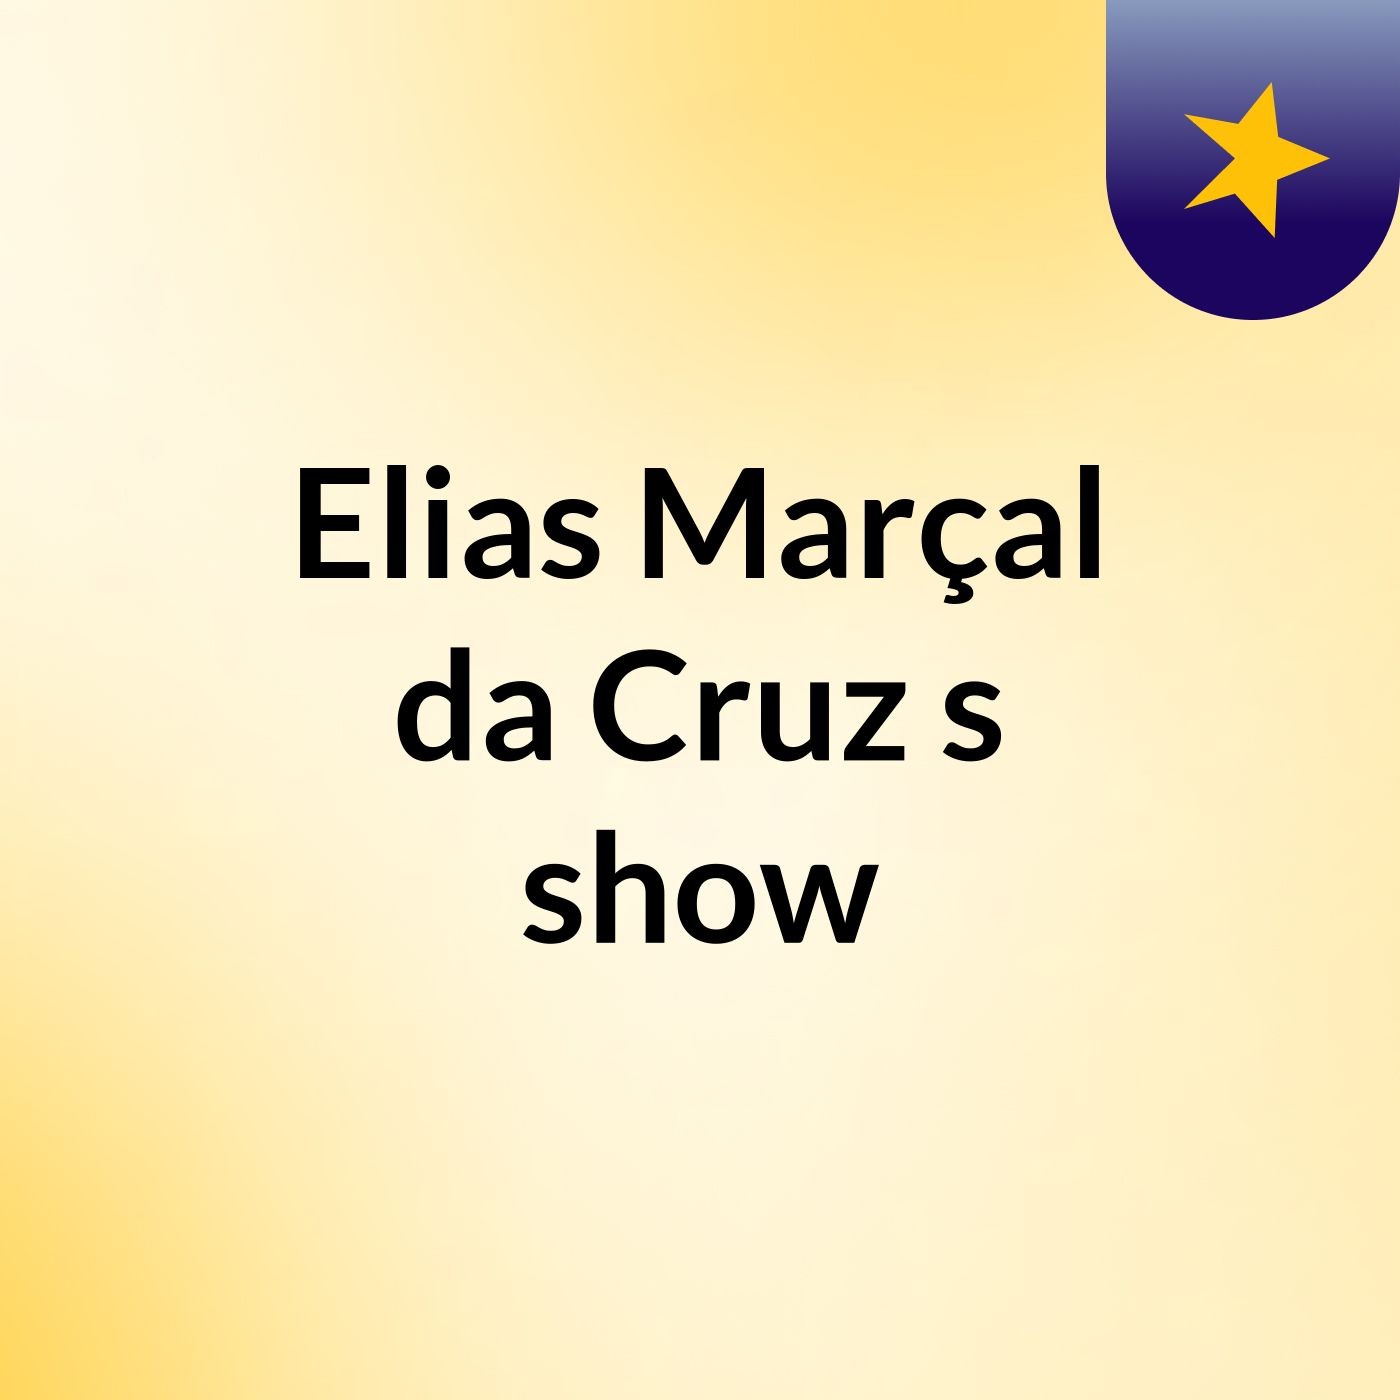 Elias Marçal da Cruz's show